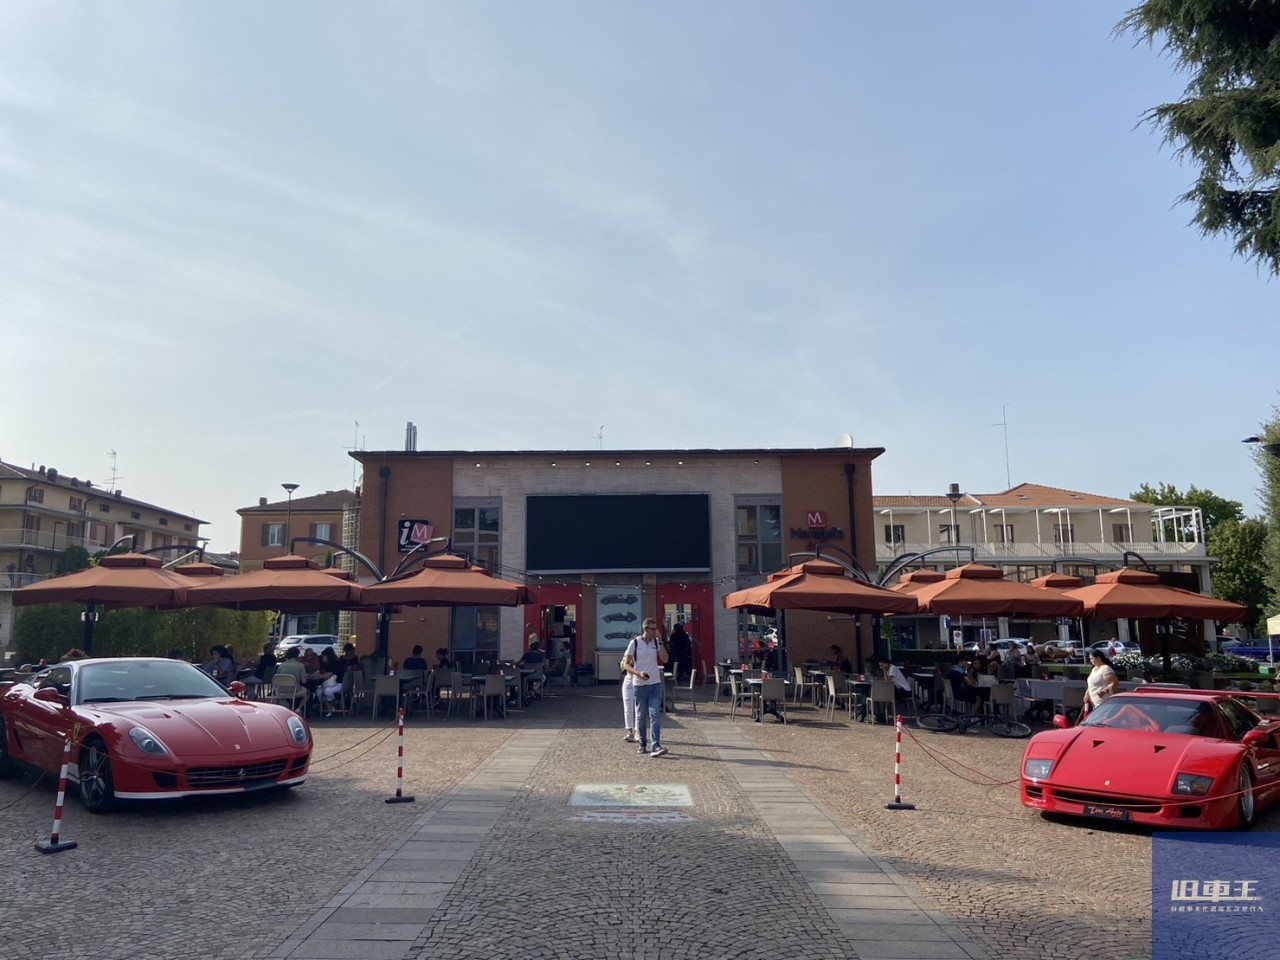 フェラーリが誕生した街「マラネッロ」を訪ねてみた